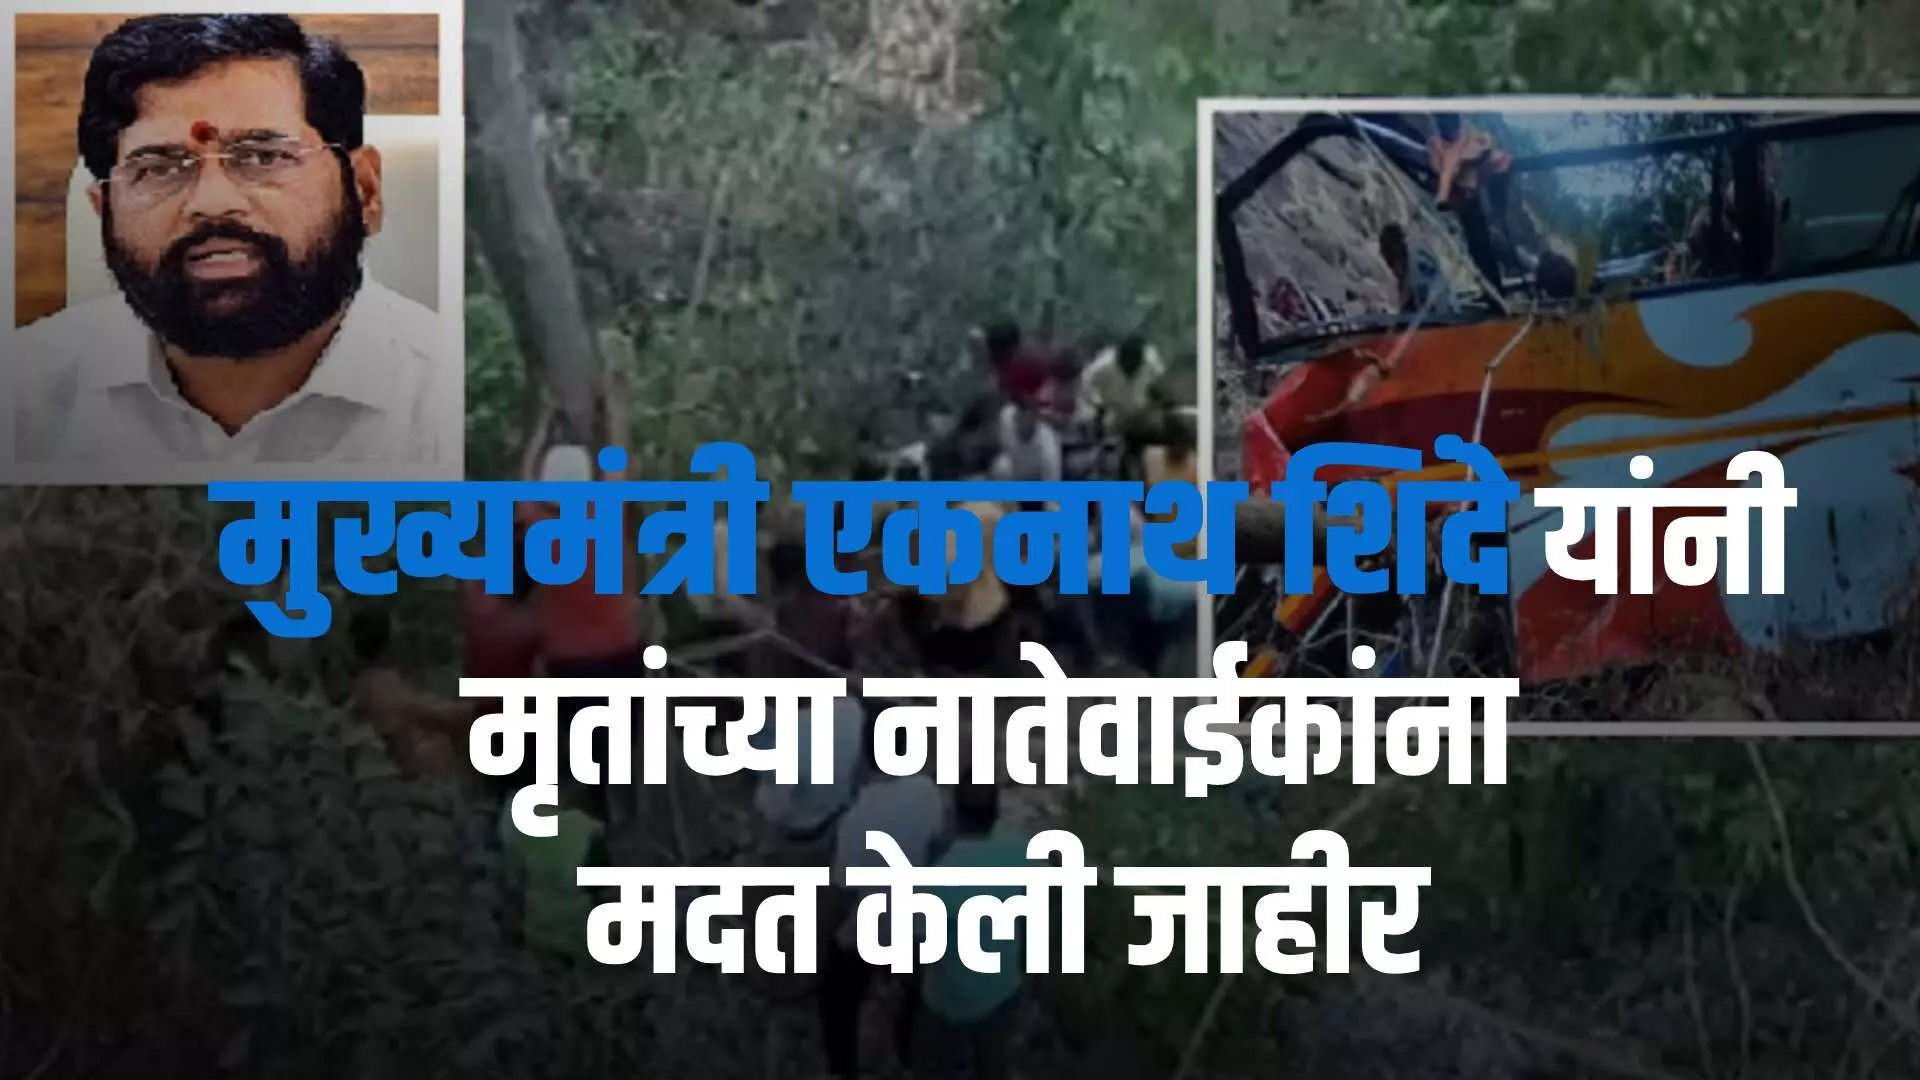 Lonavala Bus accident : खासगी बसचा अपघात, मृतांच्या नातेवाईकांना मुख्यमंत्री एकनाथ शिंदे यांनी जाहीर केली मदत